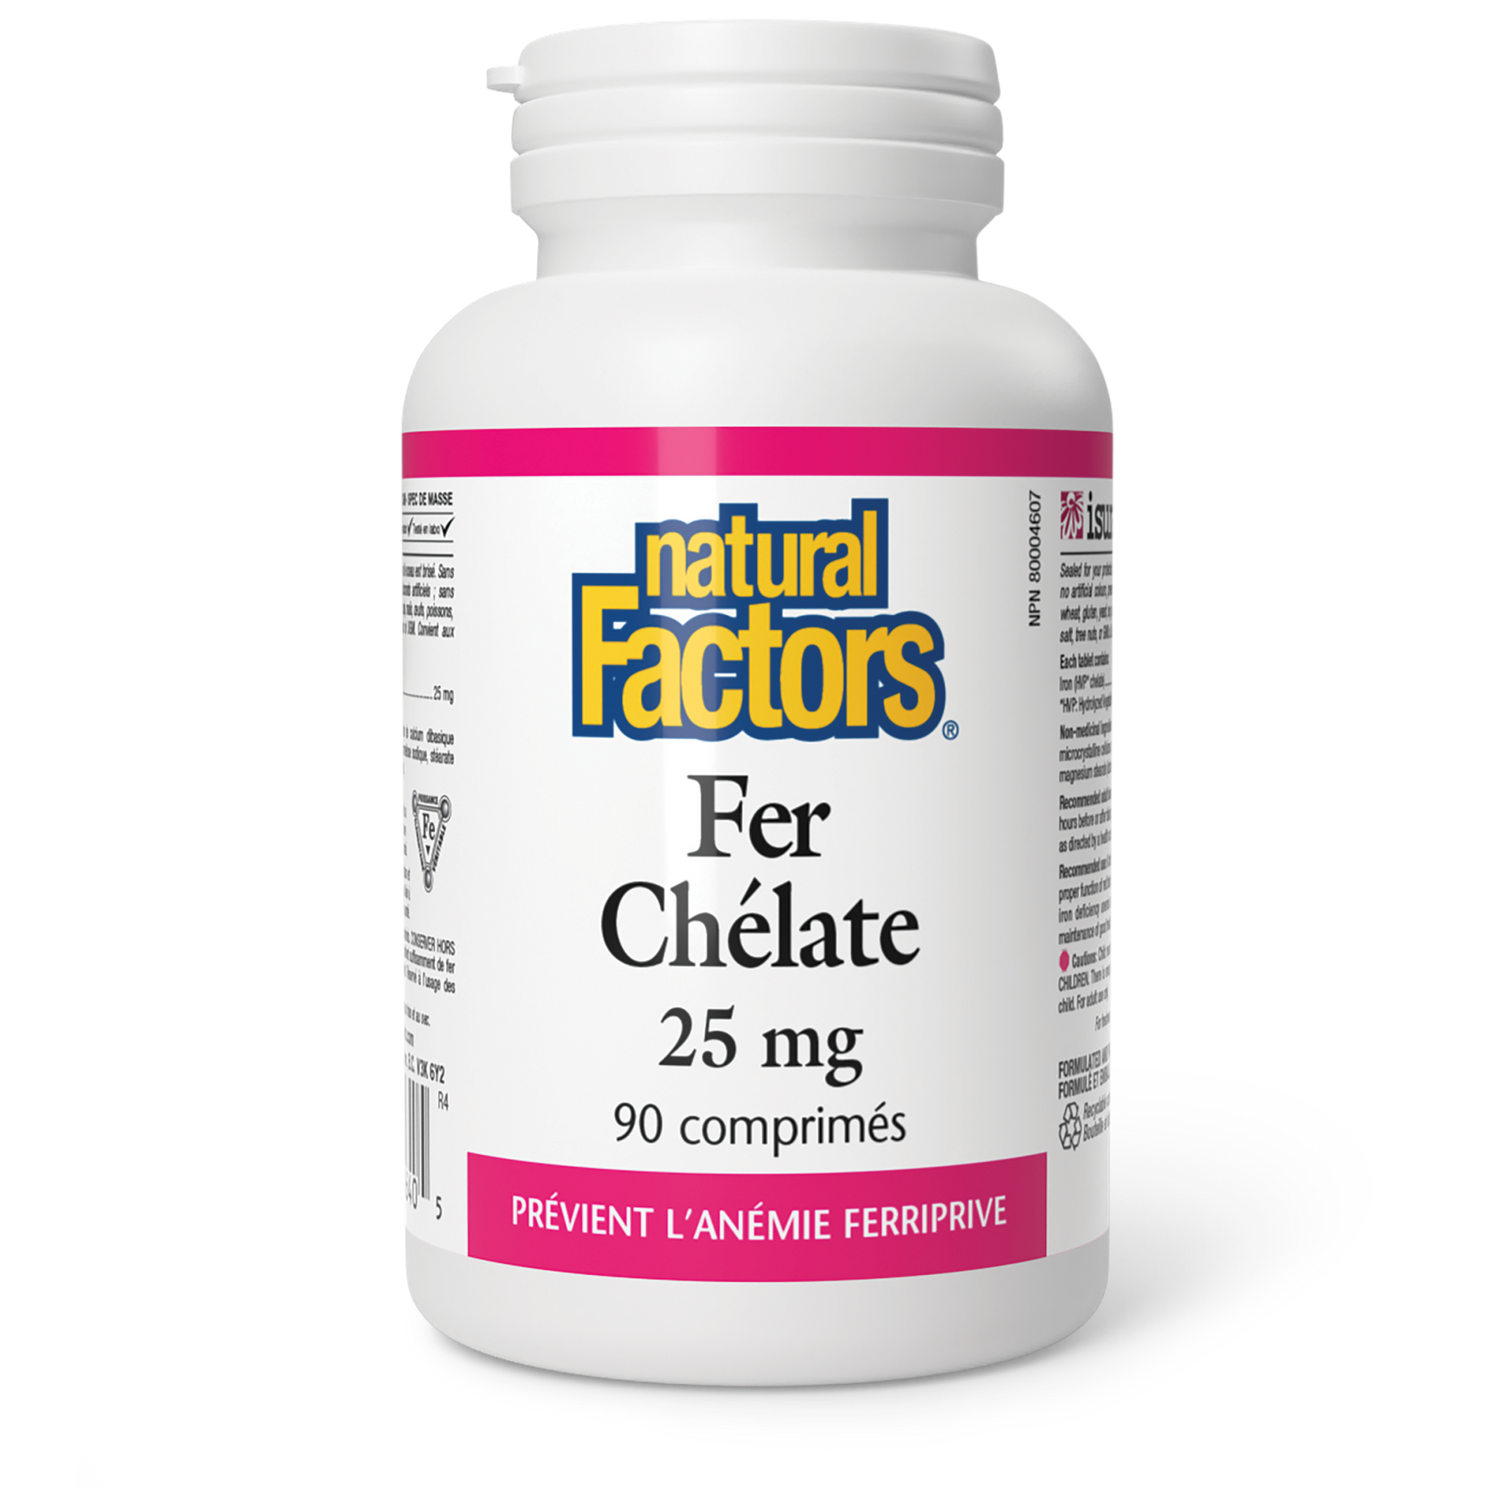 Fer Chélate 25 mg, Natural Factors|v|image|1640